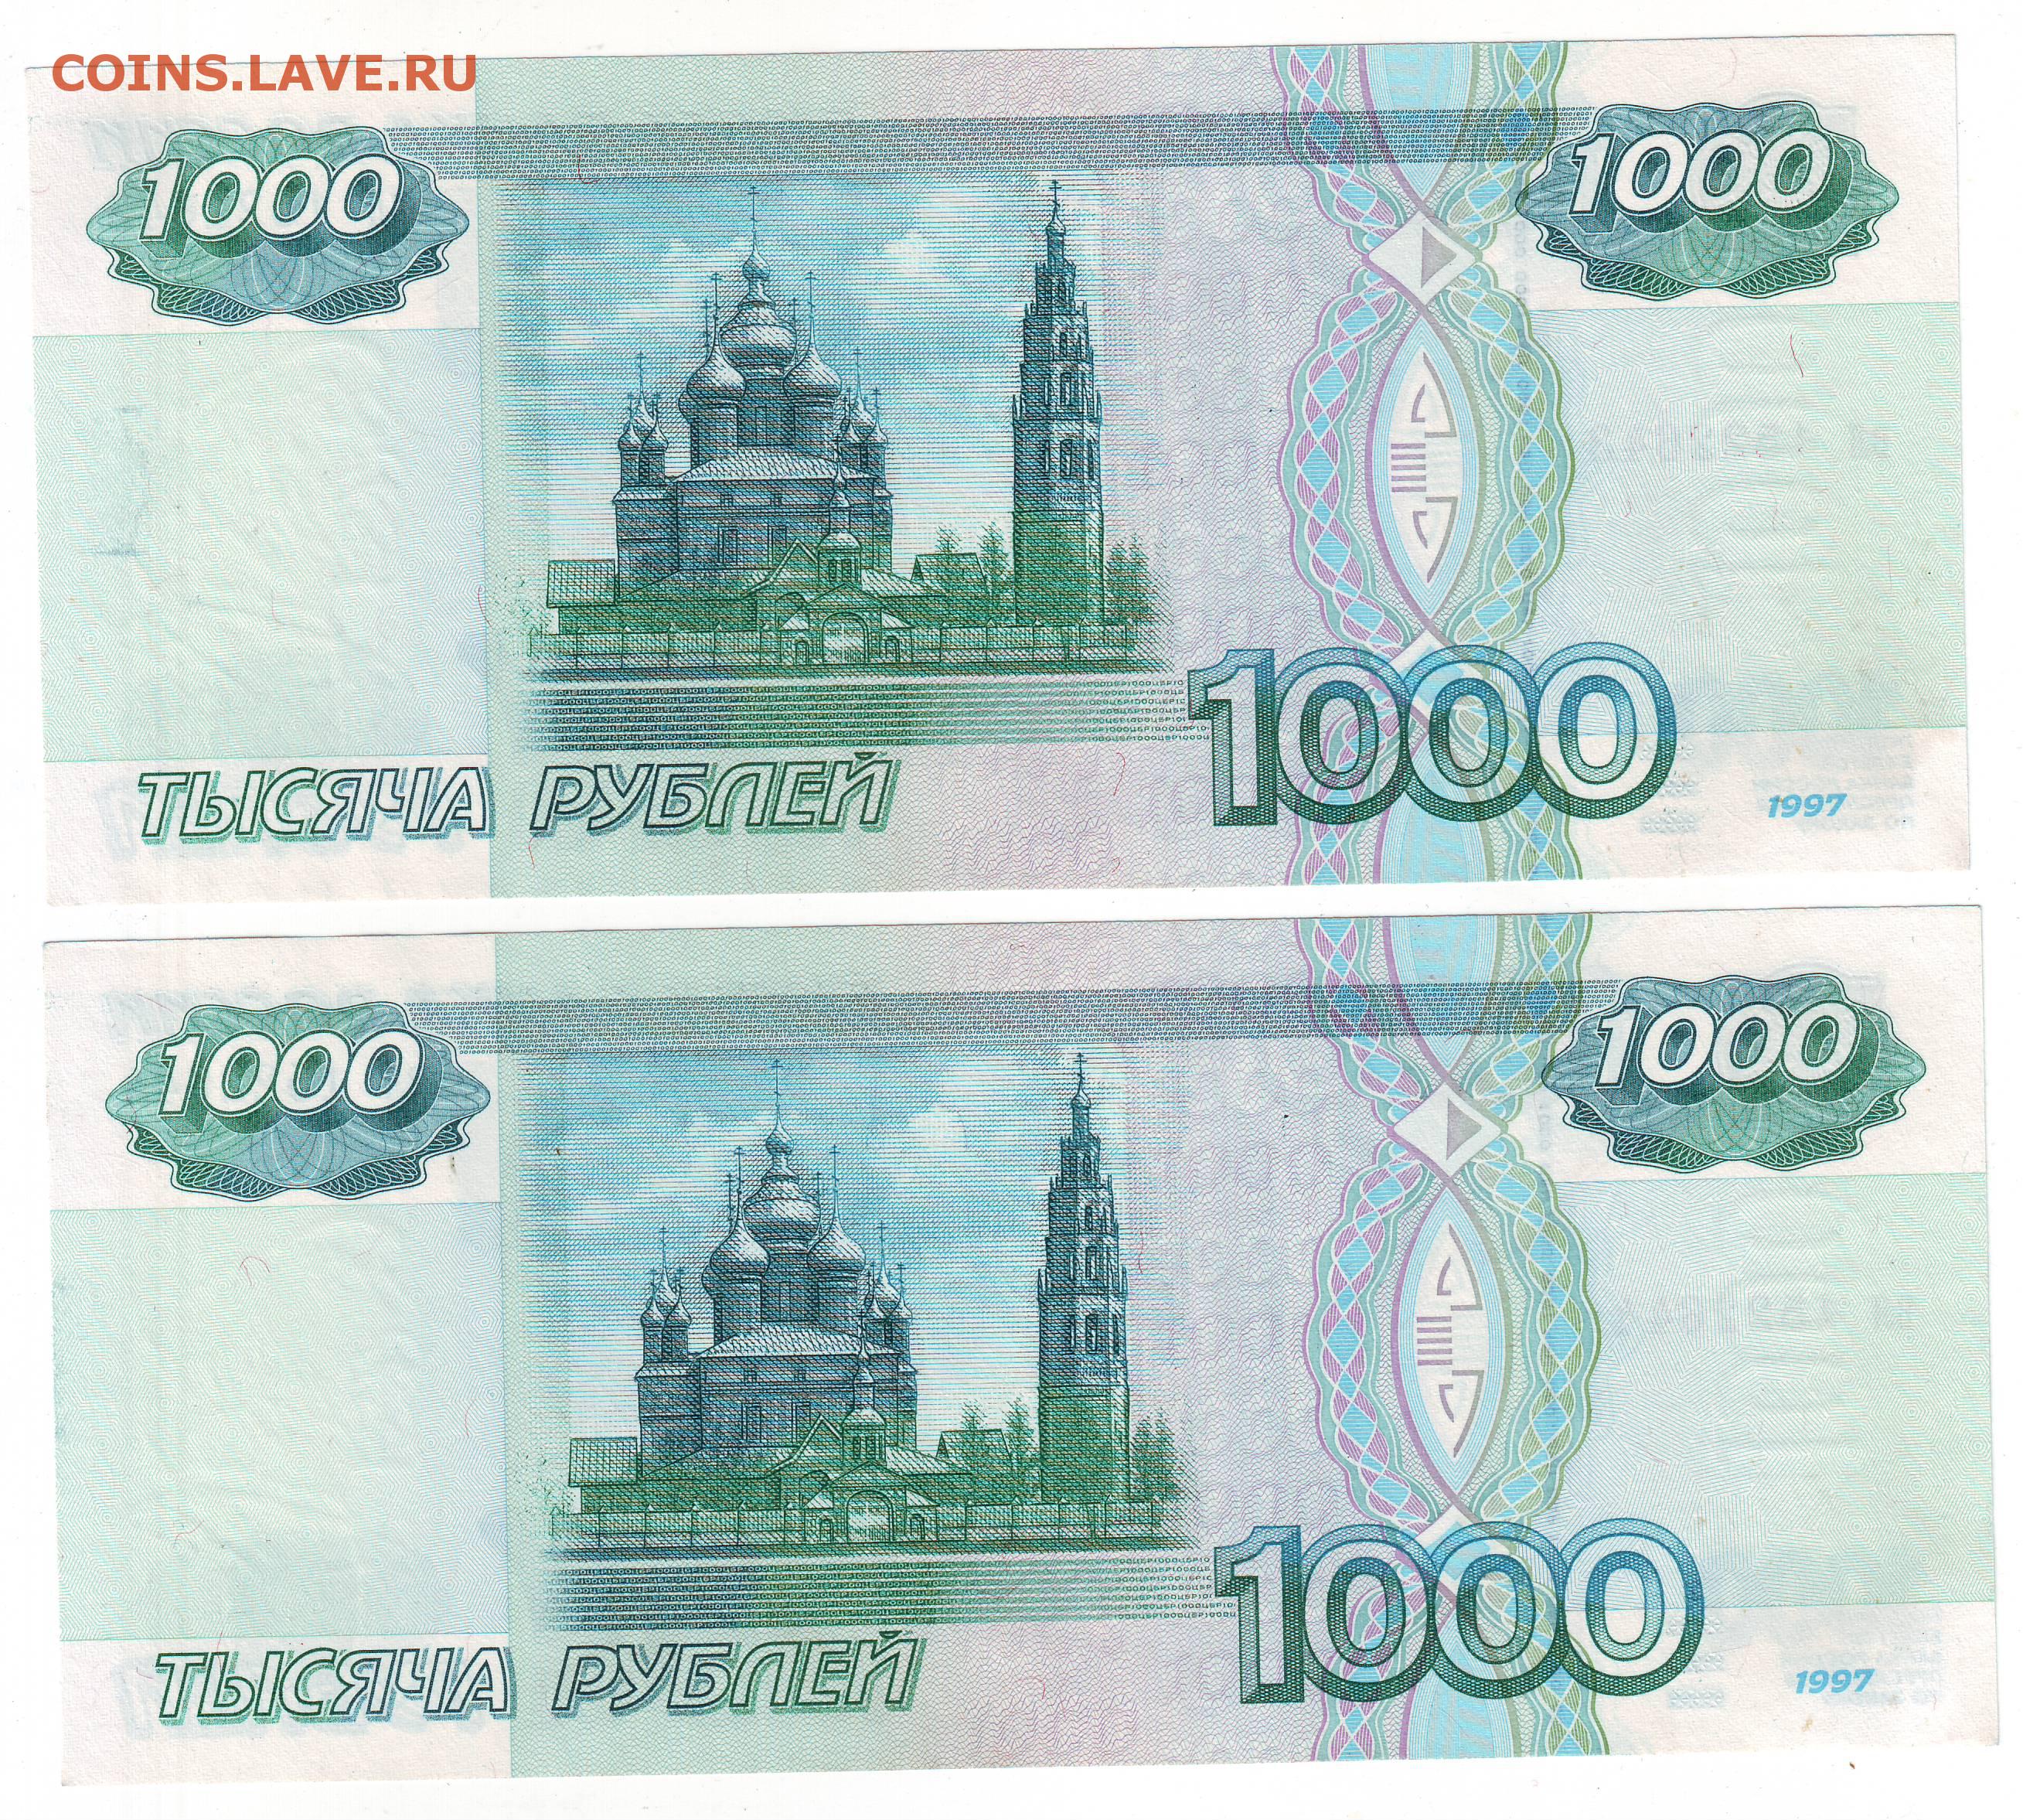 Тысяча рублей размер. 1000 Рублей купюра для печати. 1000 Рублей печать. Тысяча рублей для печати. 1000 Рублей с 2 сторон.